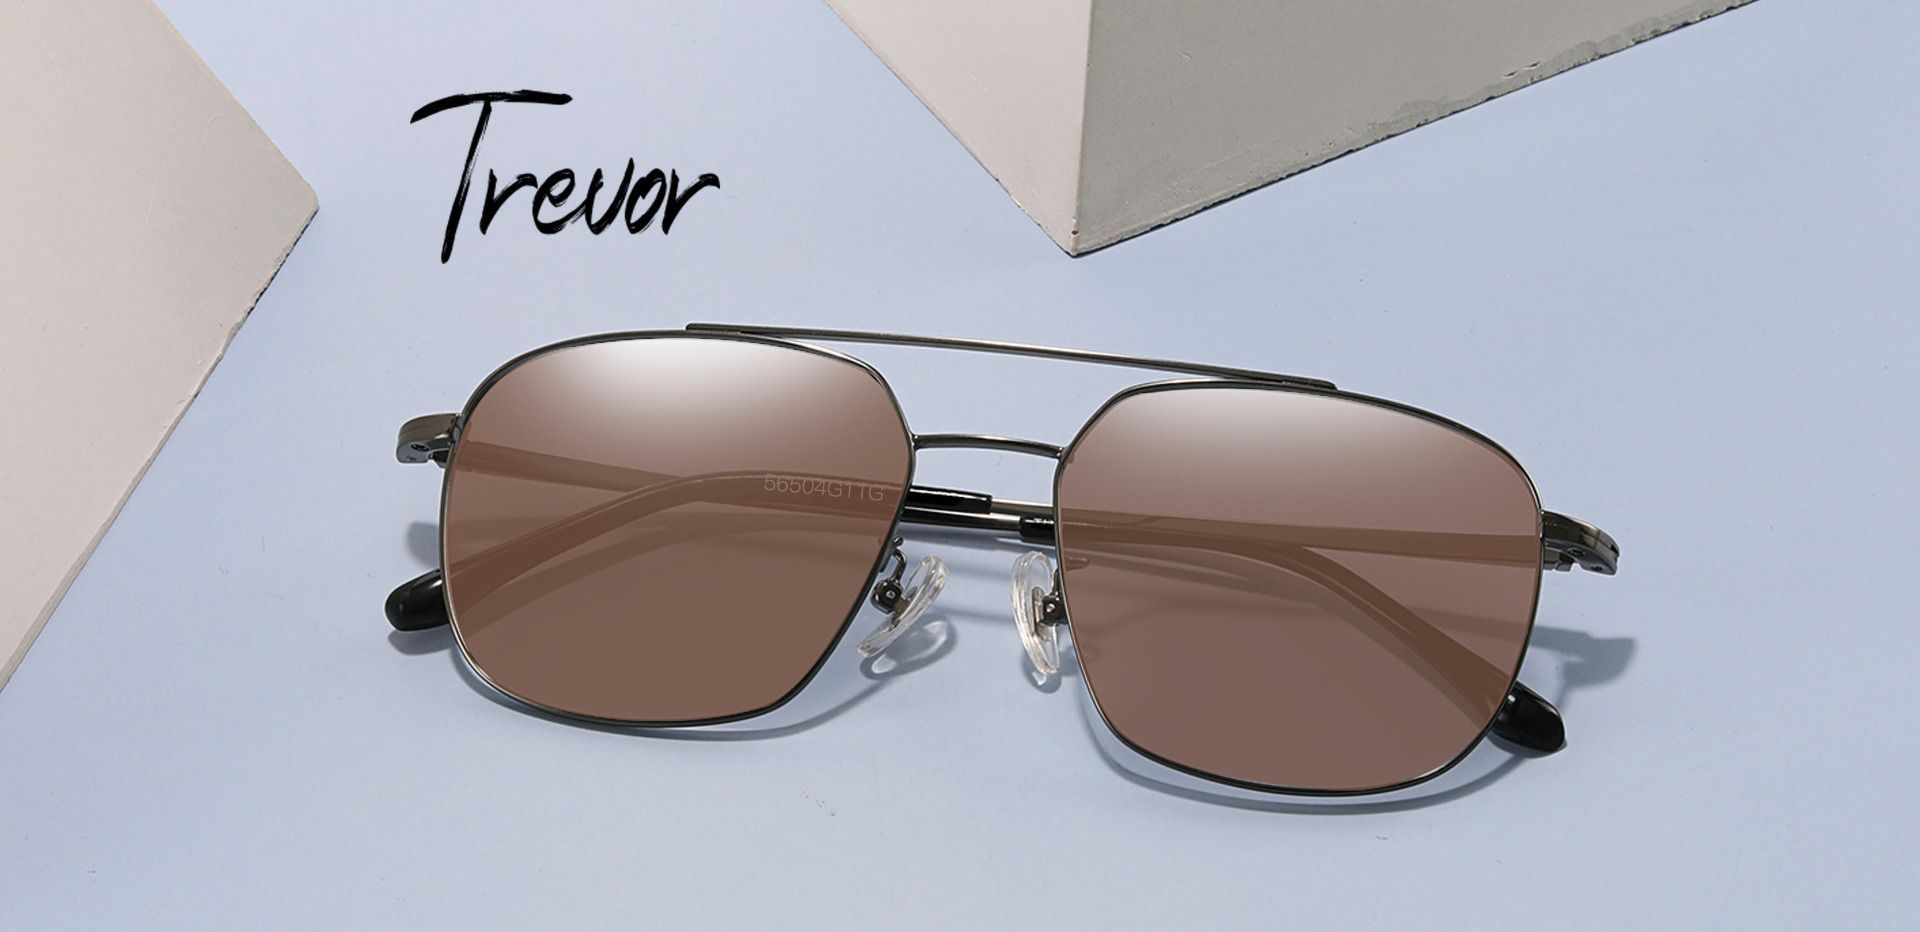 Trevor Aviator Progressive Sunglasses - Gray Frame With Brown Lenses